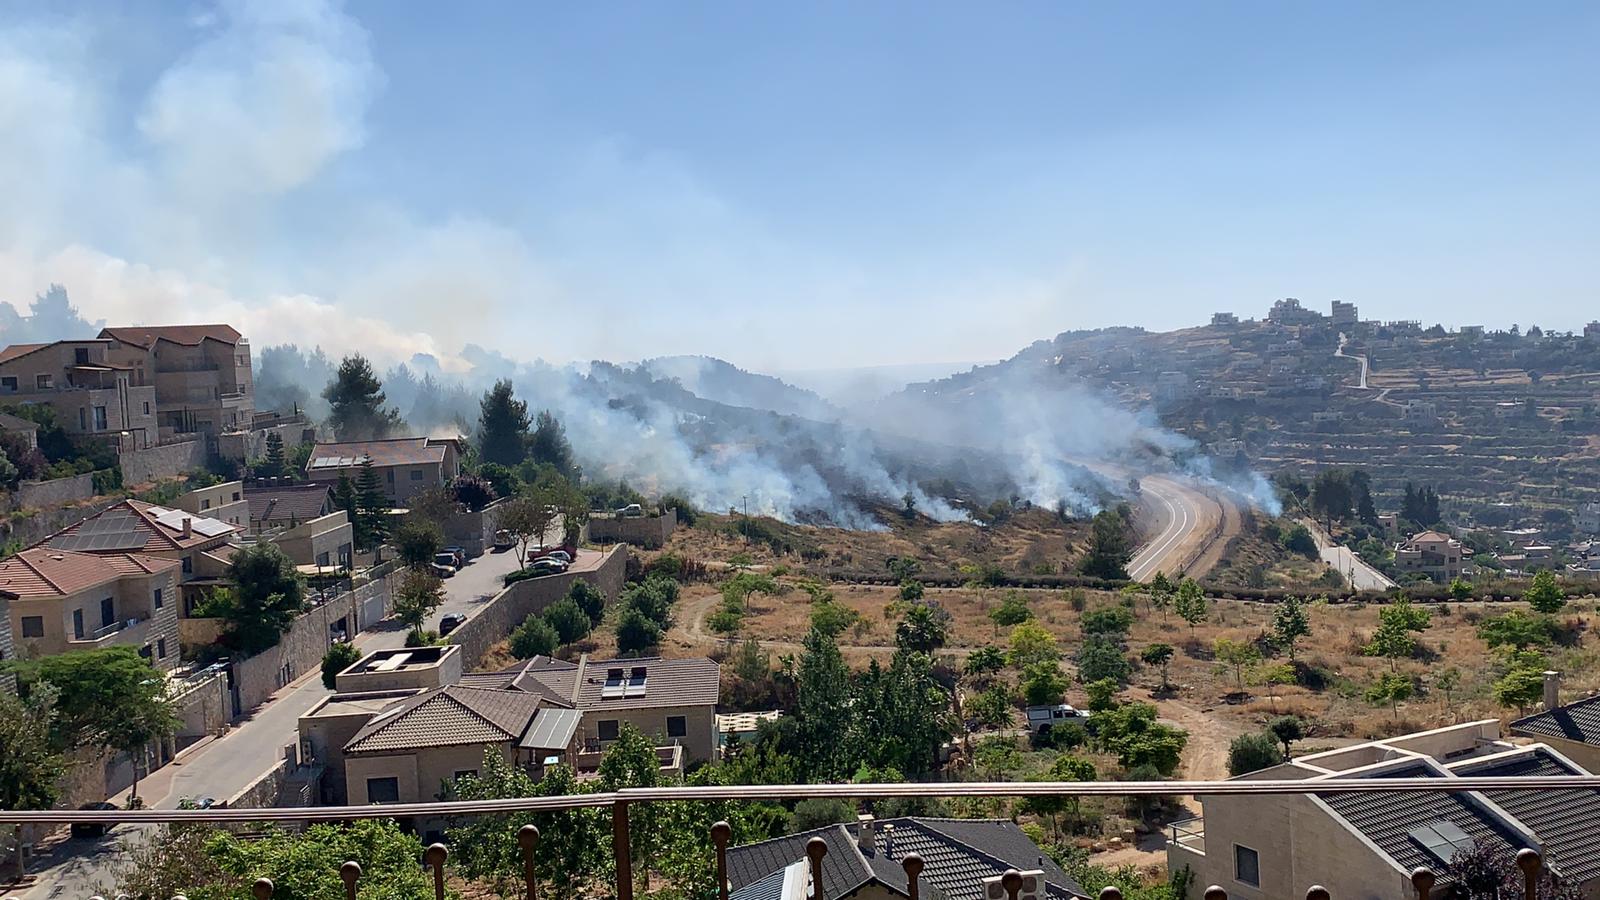 השריפה סמוך להר אדר (צילום: משה לוי)